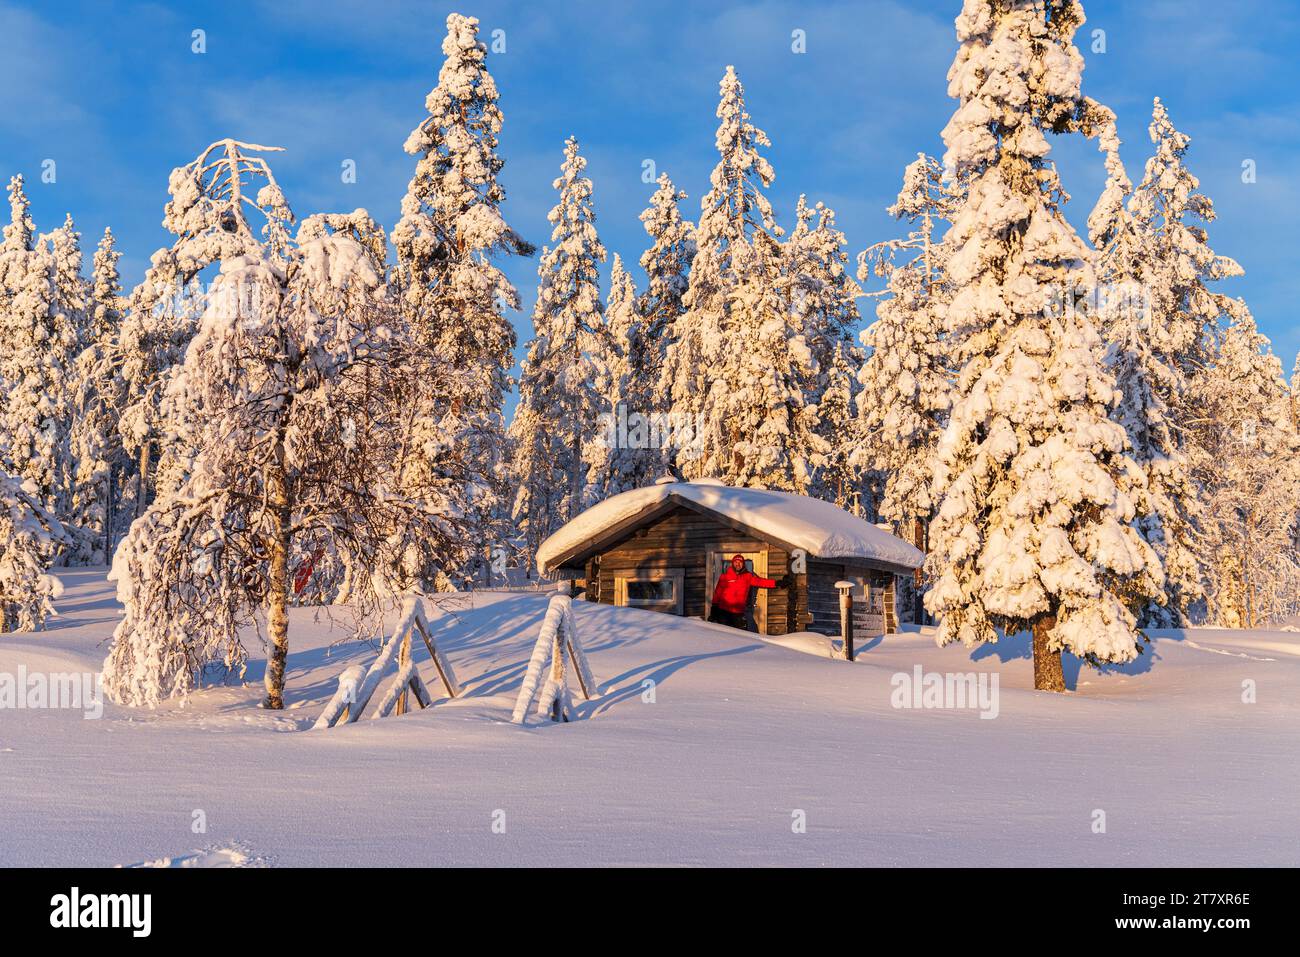 Il turista al sole del mattino presto si trova di fronte a uno chalet isolato nella foresta innevata, Norrbotten, Lapponia svedese, Svezia, Scandinavia, Europa Foto Stock